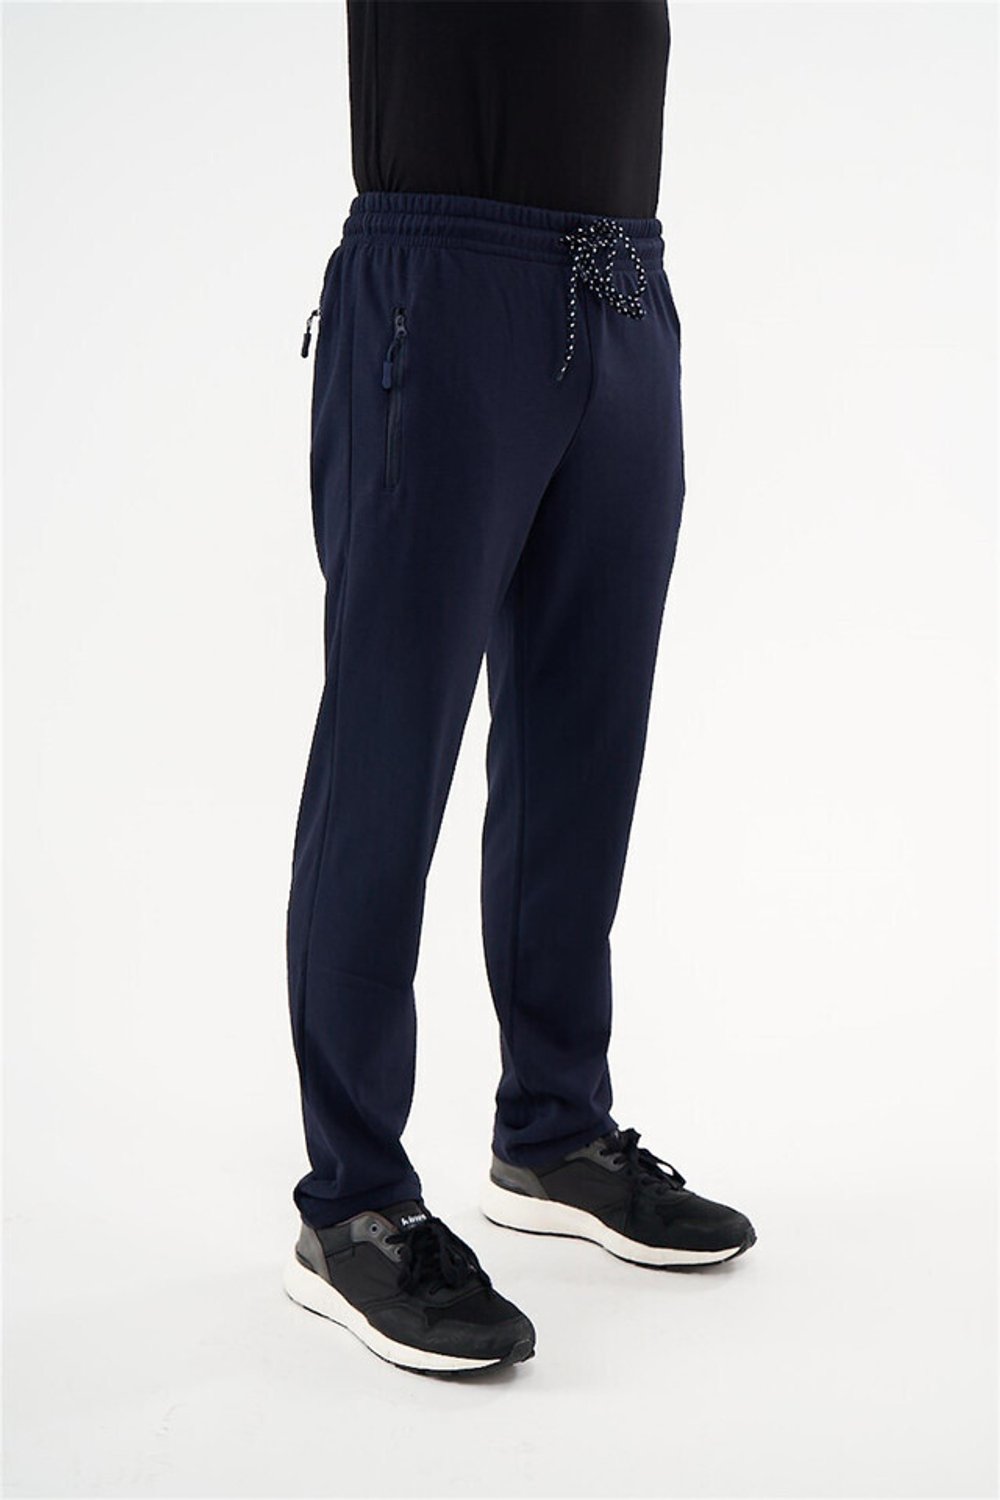 RELAX MODE / Спортивные штаны мужские без утепления хлопок прямые - 40076